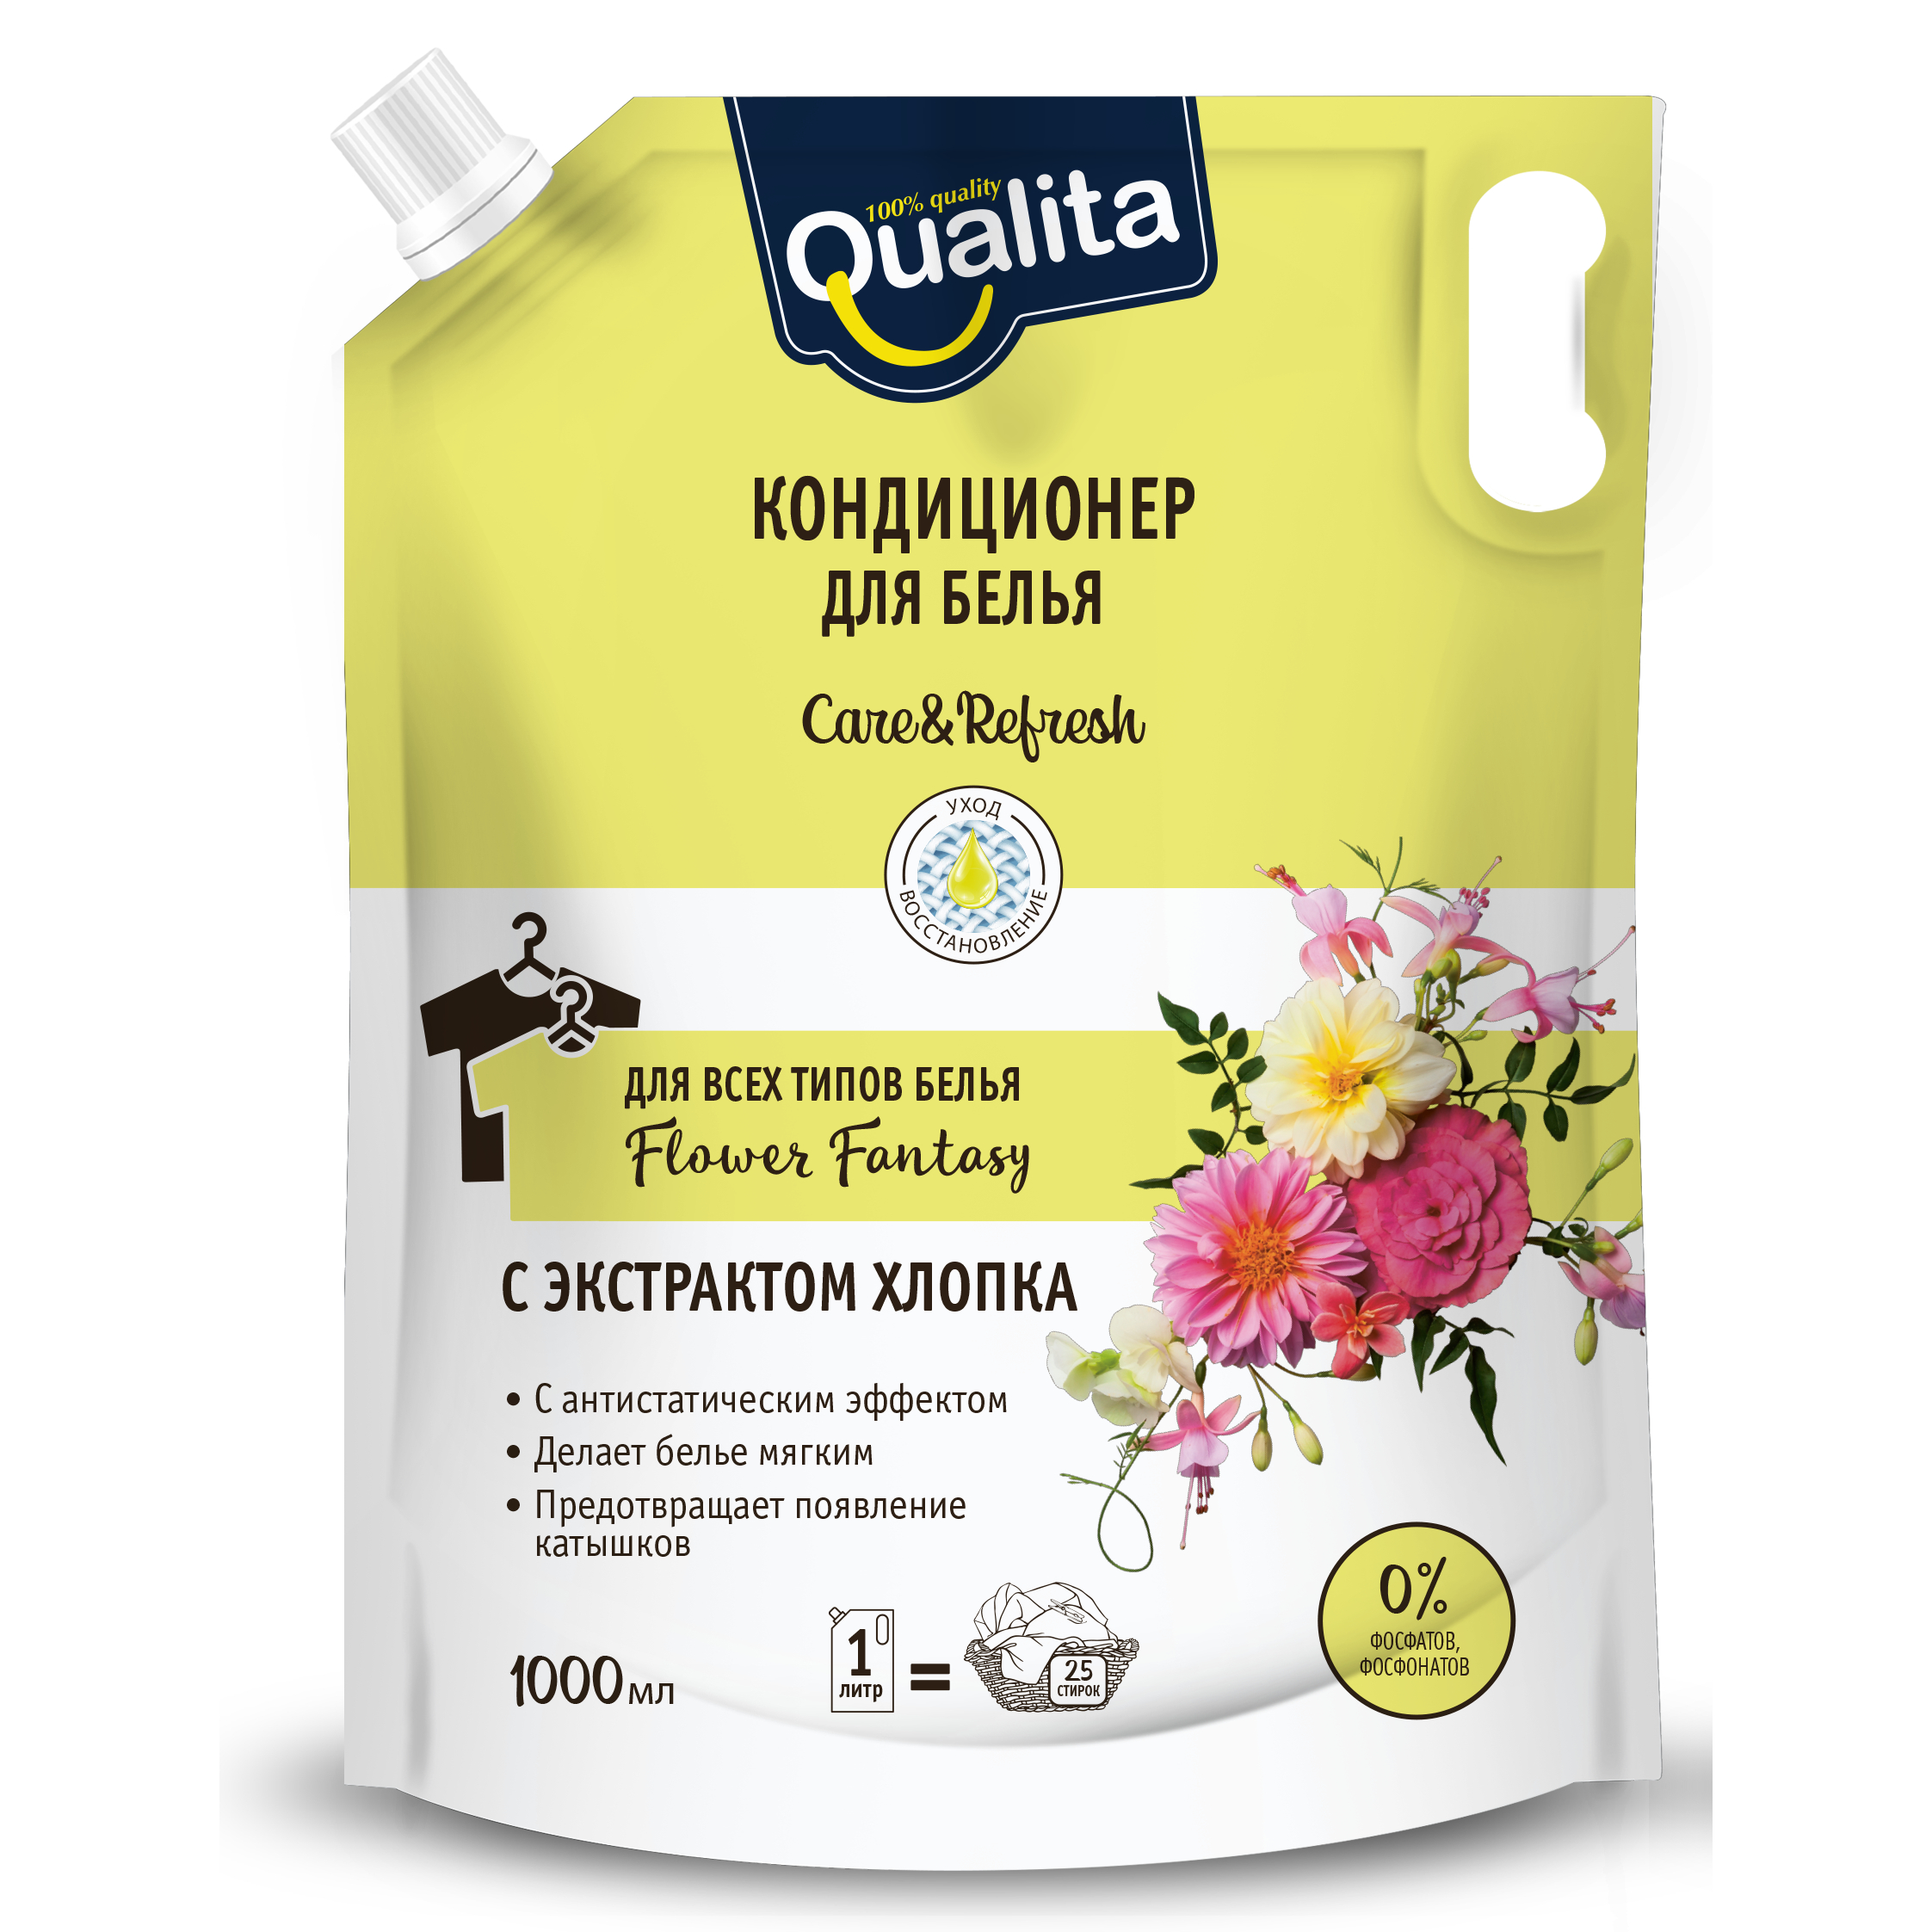 Где купить Кондиционер для белья Qualita Flower fantasy с экстрактом хлопка для всех типов белья, дой-пак, 1 л Qualita 